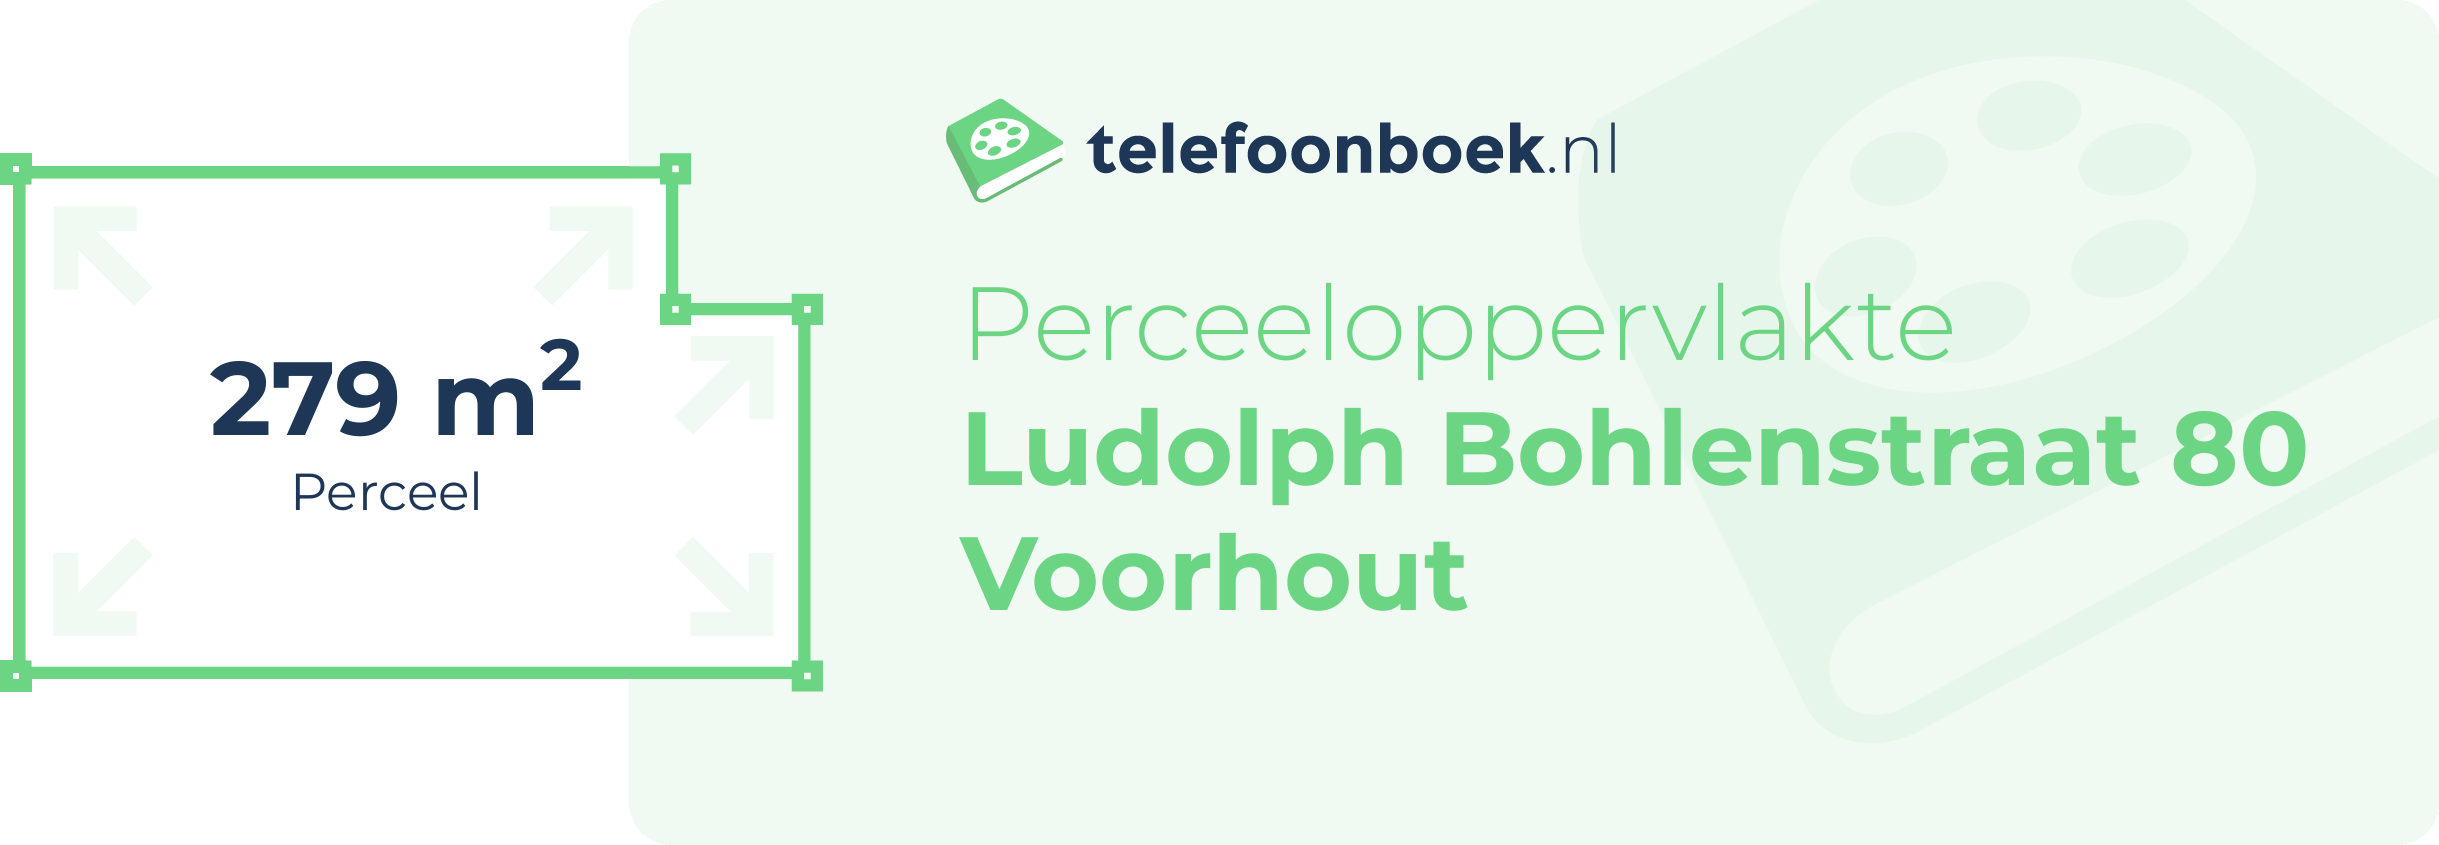 Perceeloppervlakte Ludolph Bohlenstraat 80 Voorhout